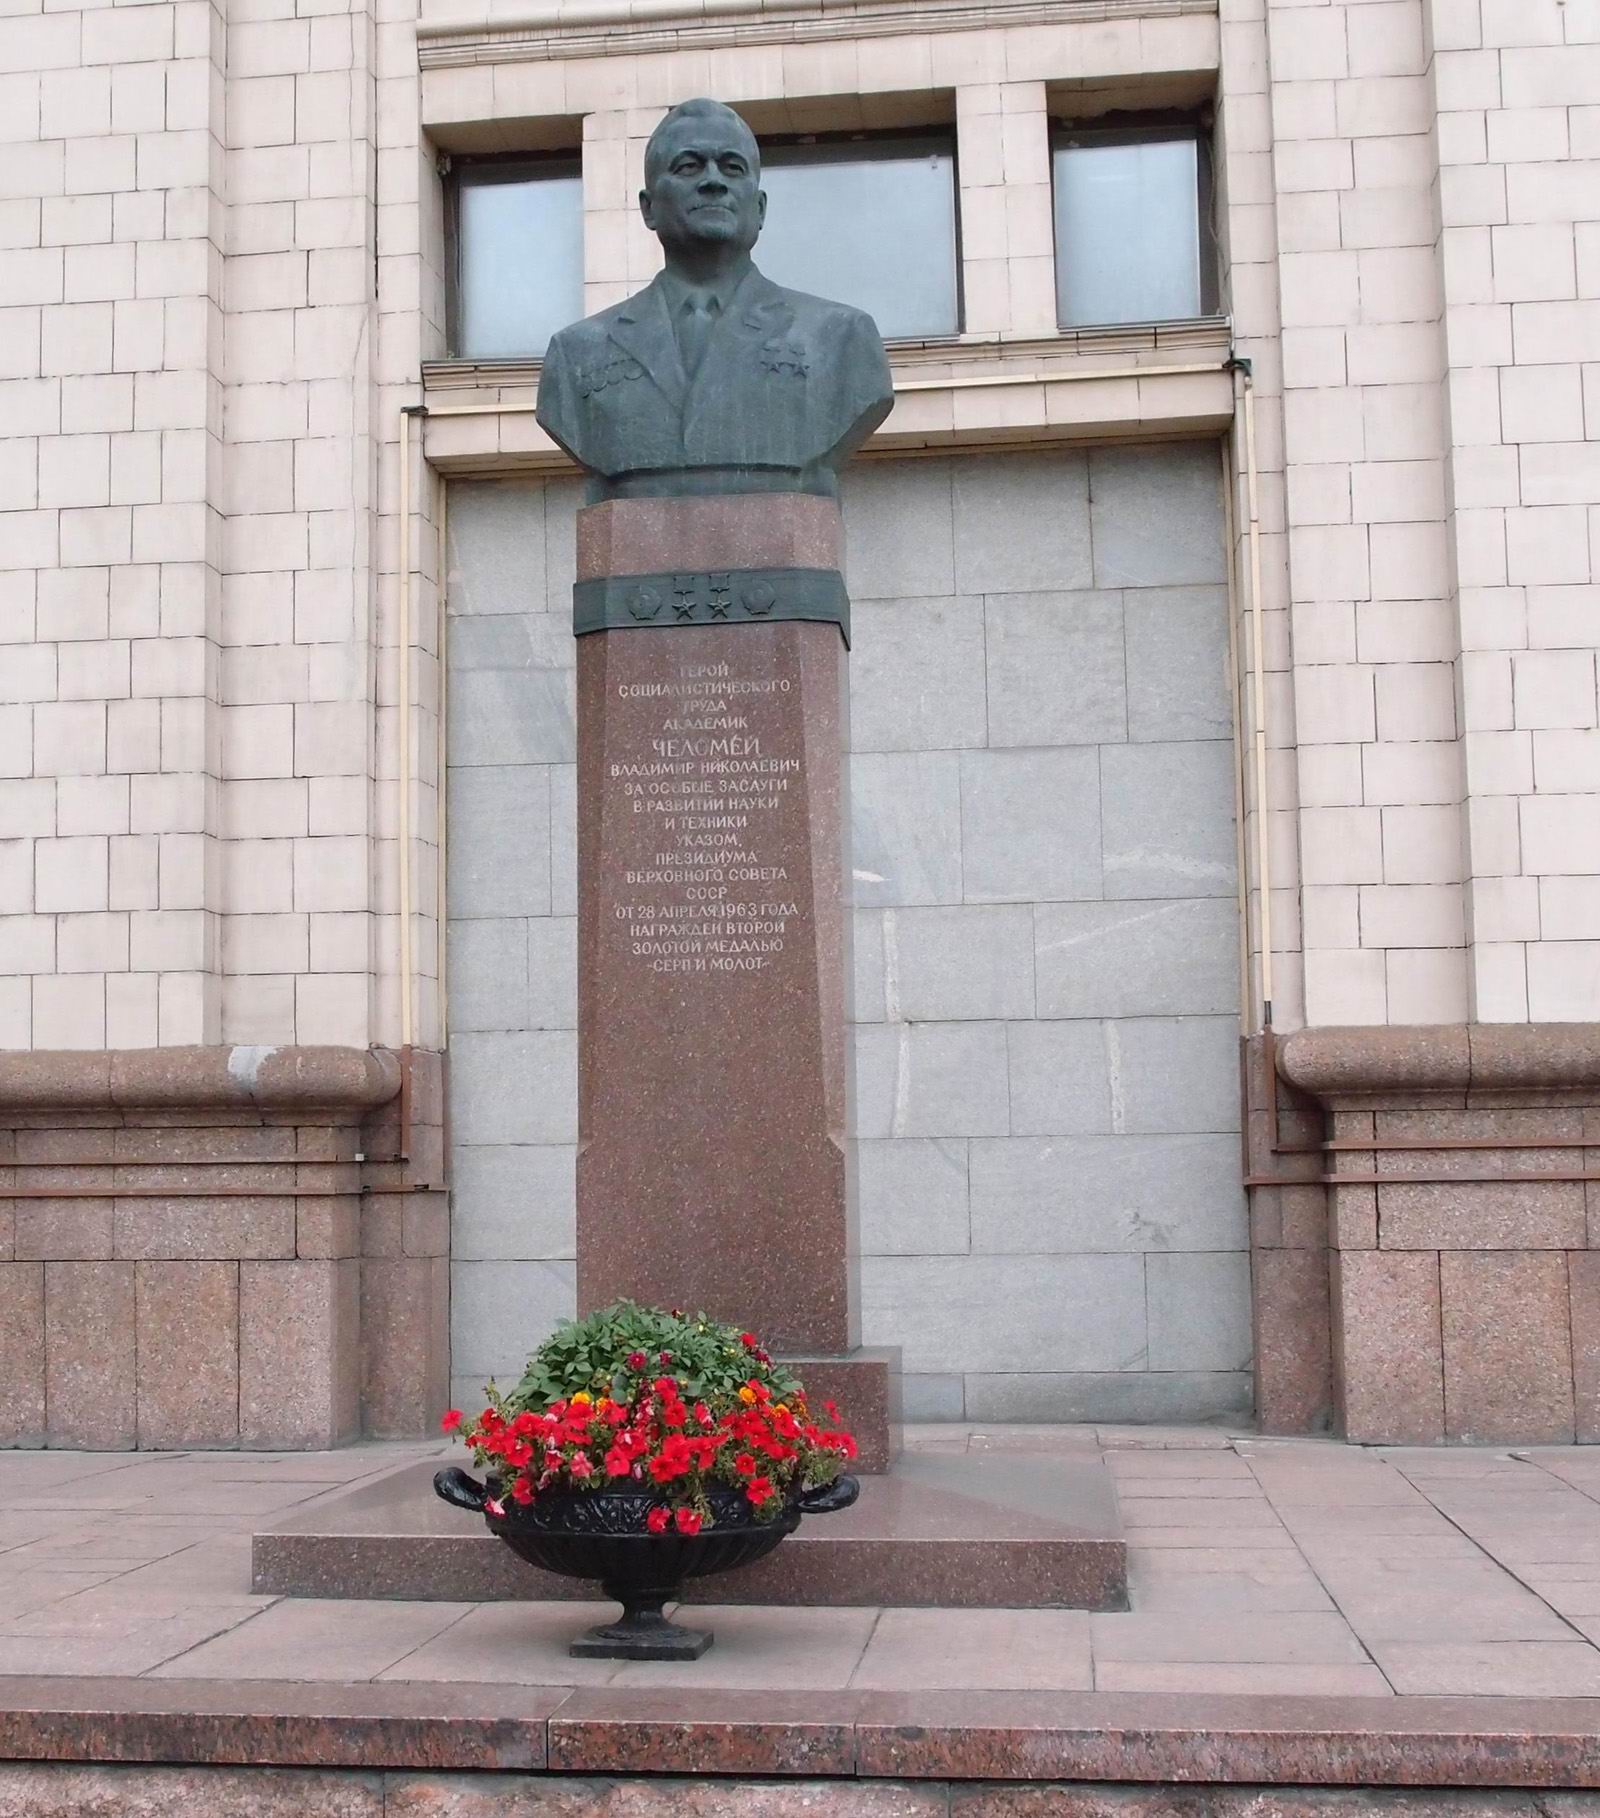 Памятник Челомею В.Н. (1914-1984), ск. В.А.Сонин, арх. С.И.Кулев, на Лефортовской набережной (возле МГТУ им. Н.Э.Баумана), открыт в 1984.